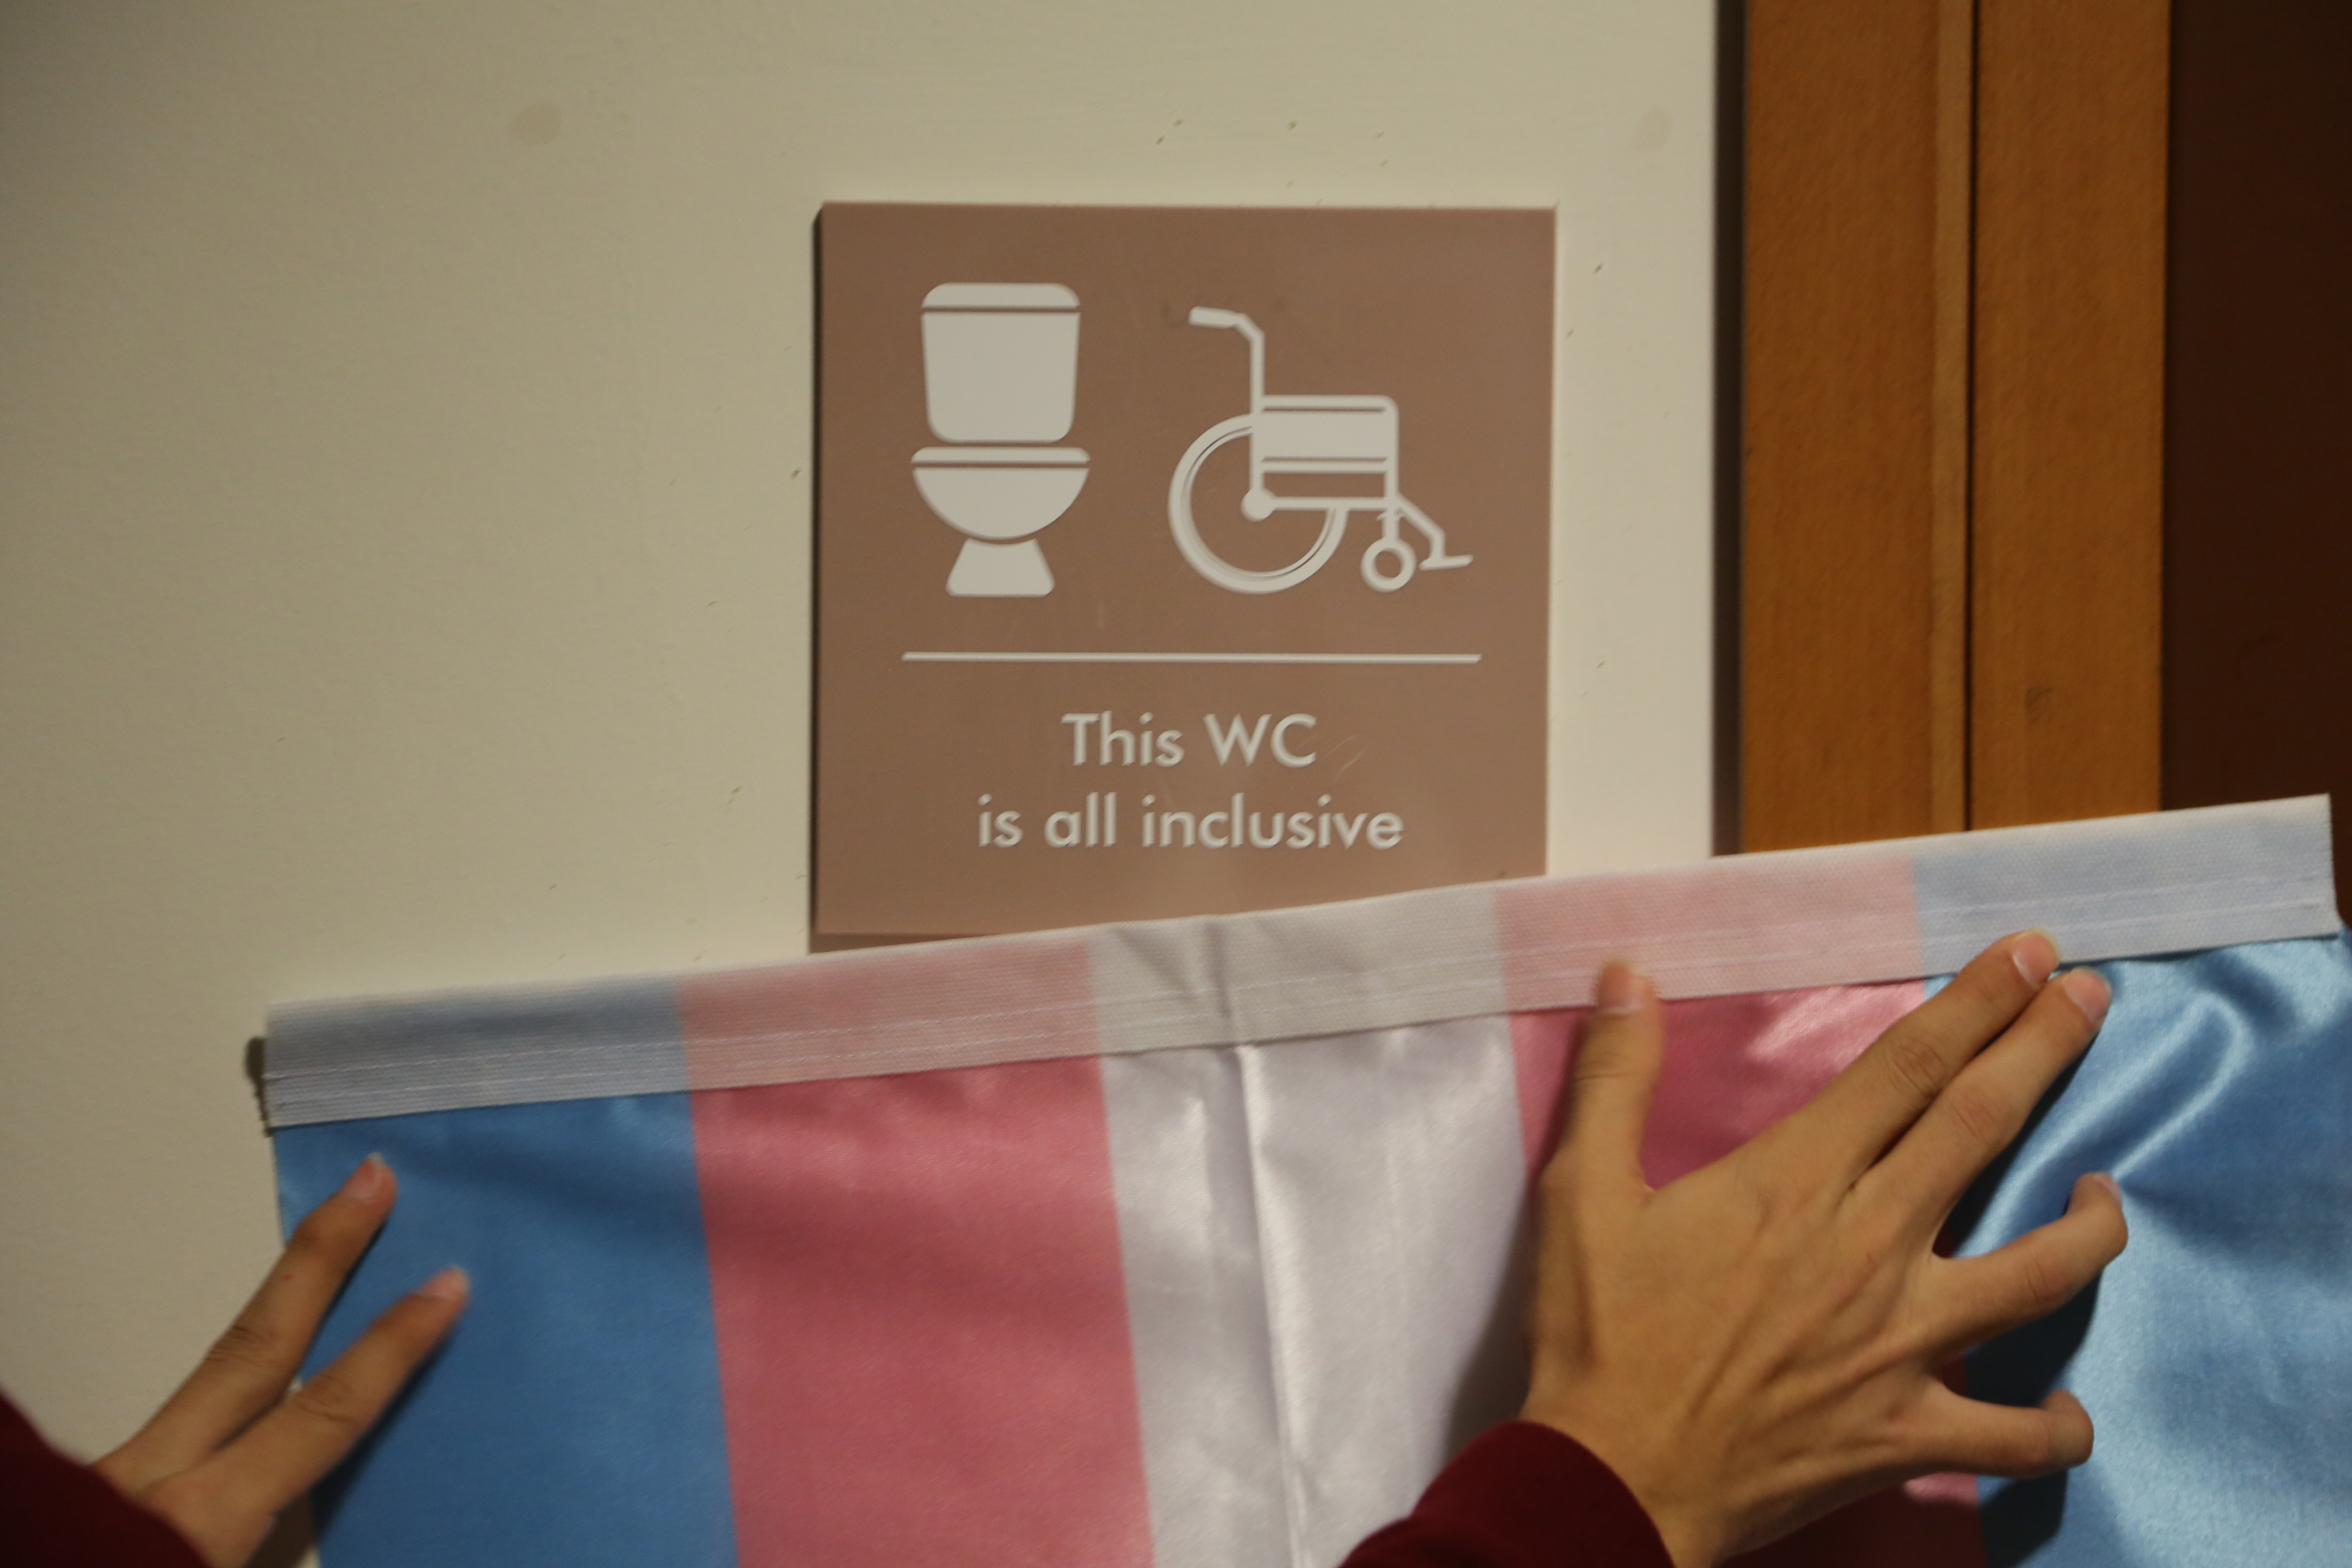 Koç Üniversitesi’nde dokuz cinsiyetsiz tuvalet açıldı Kaos GL - LGBTİ+ Haber Portalı